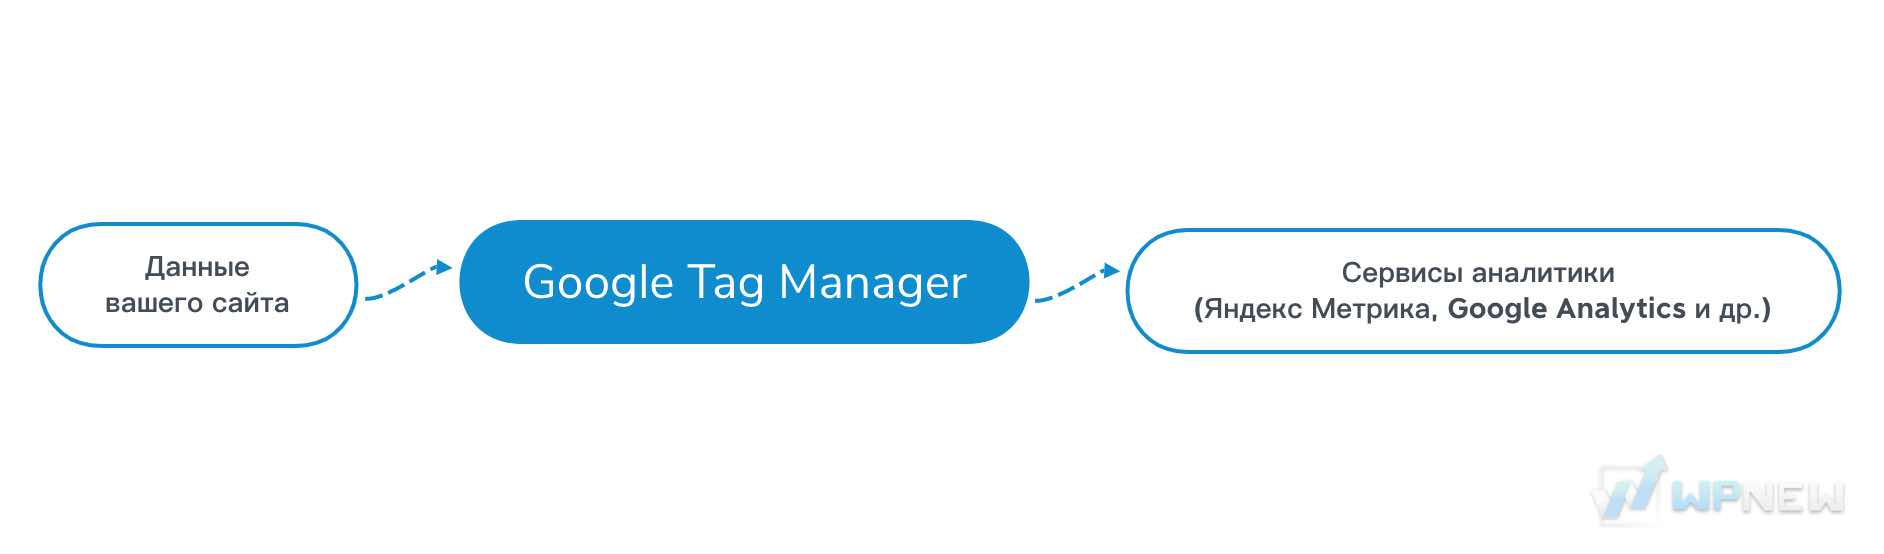 Что такое Google Tag Manager